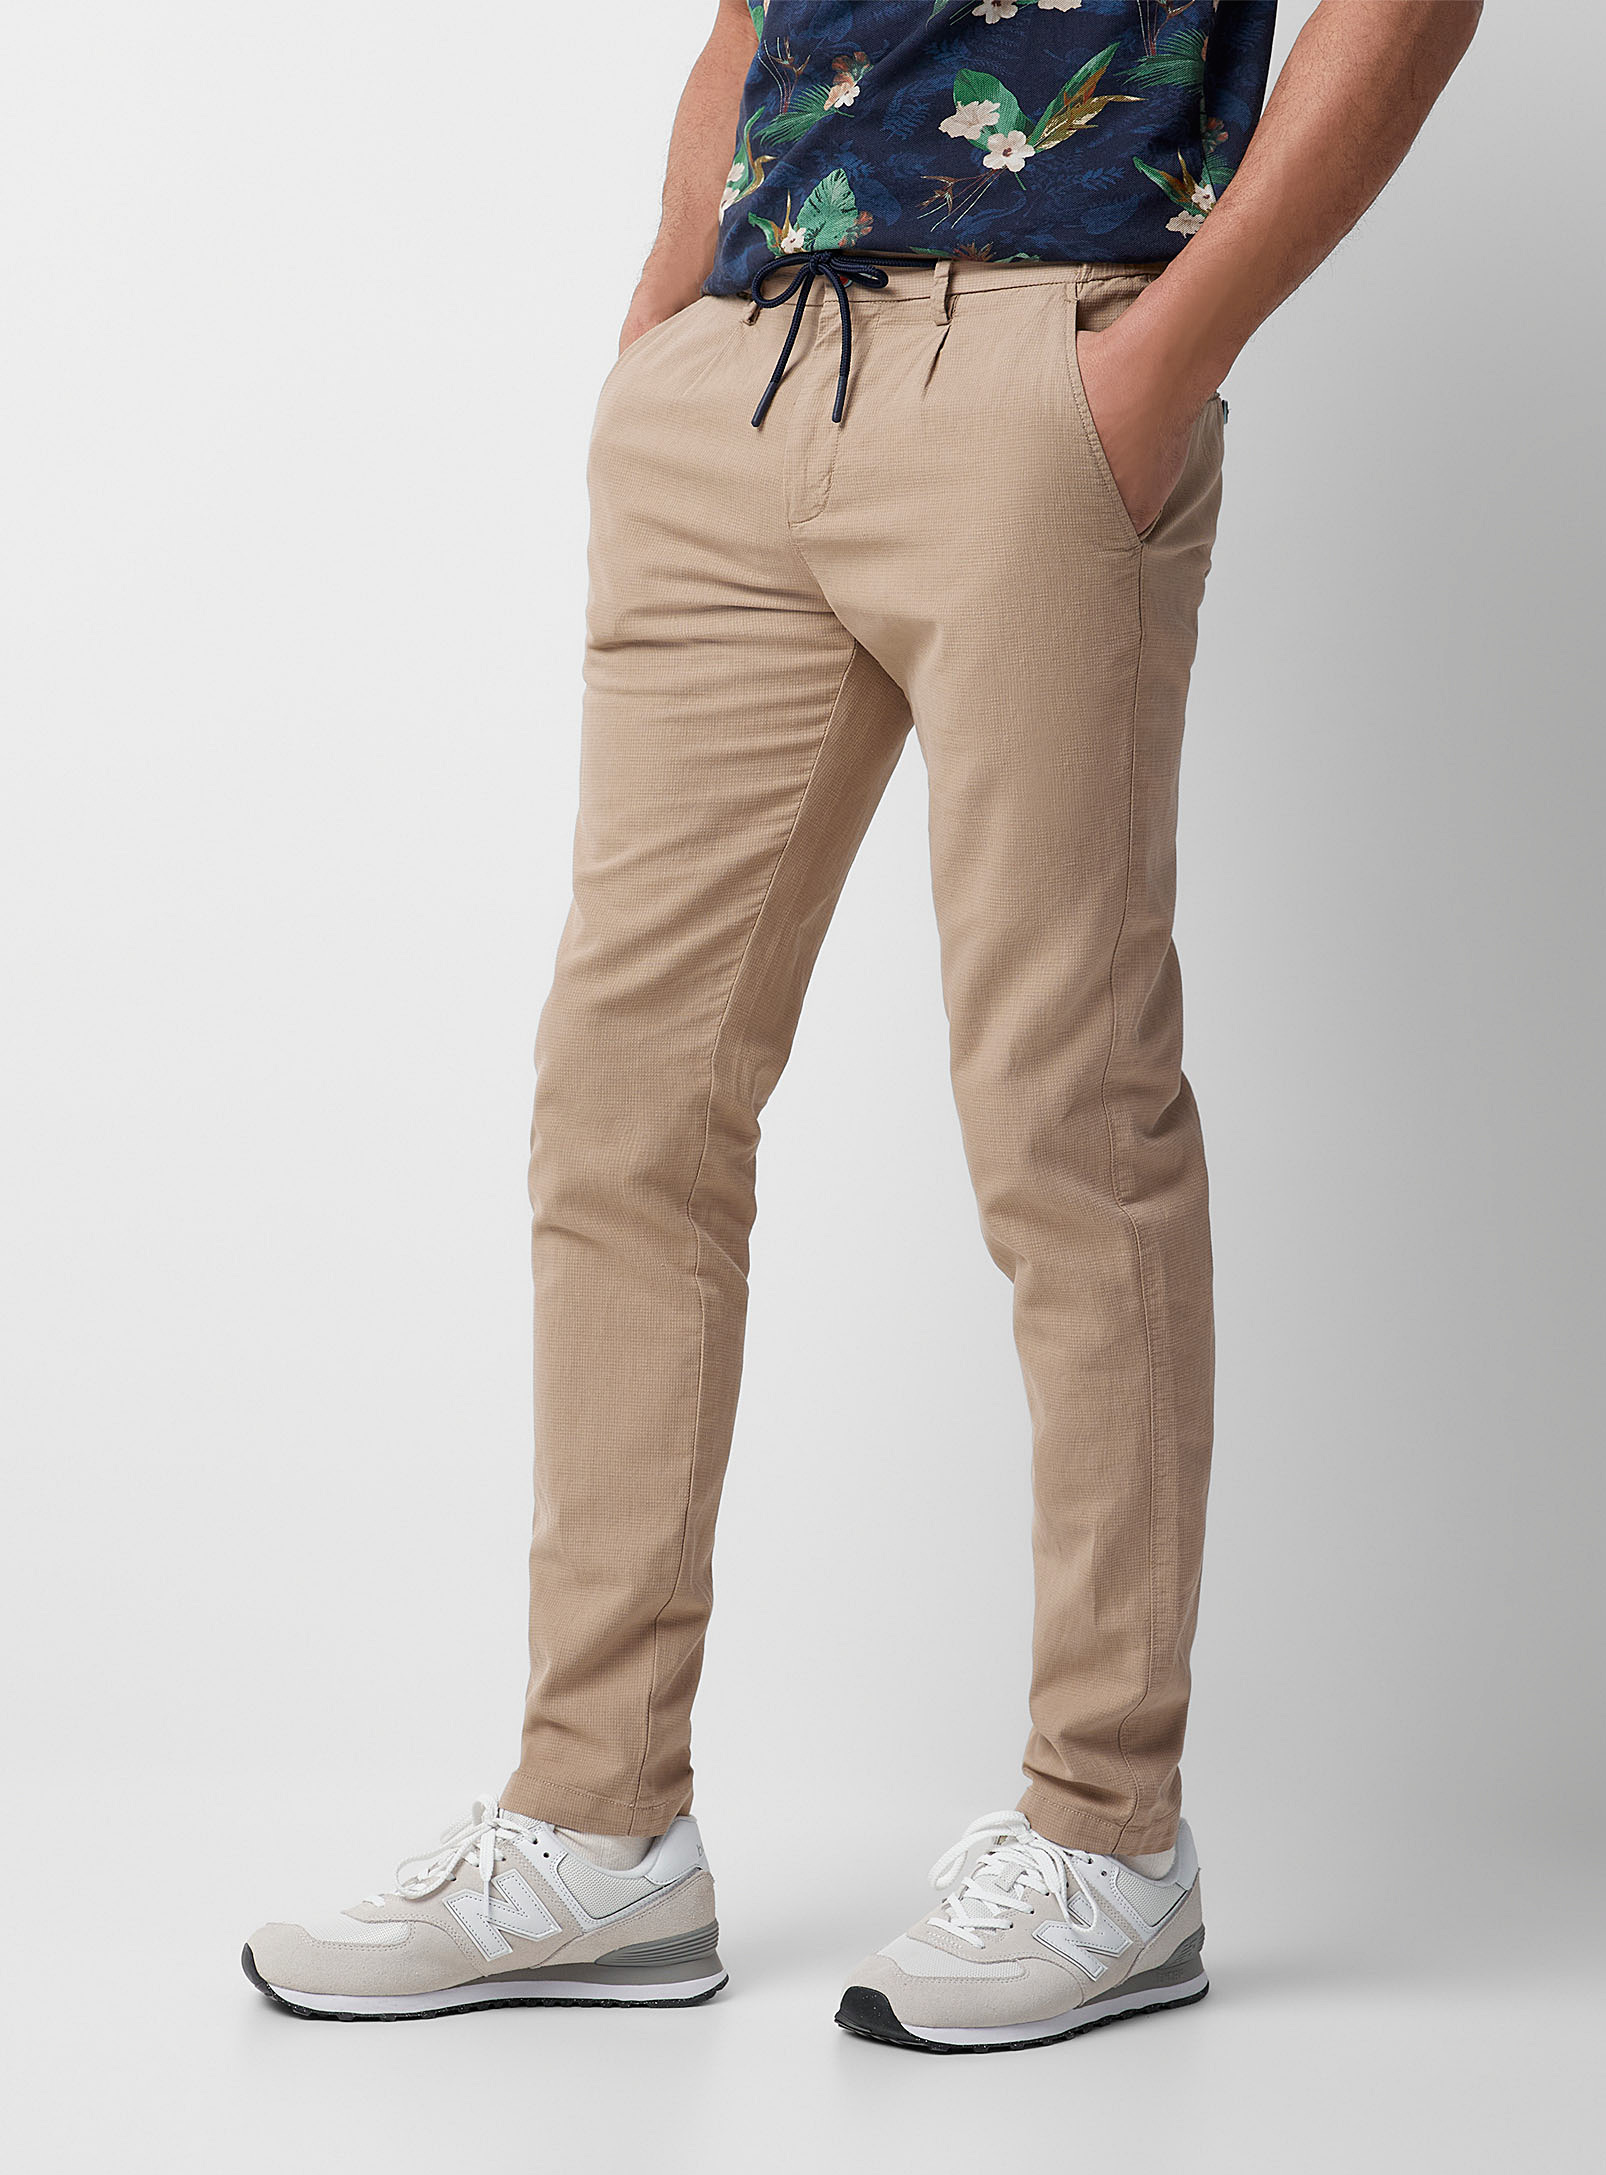 New Zealand Auckland - Le pantalon texturé taille confort